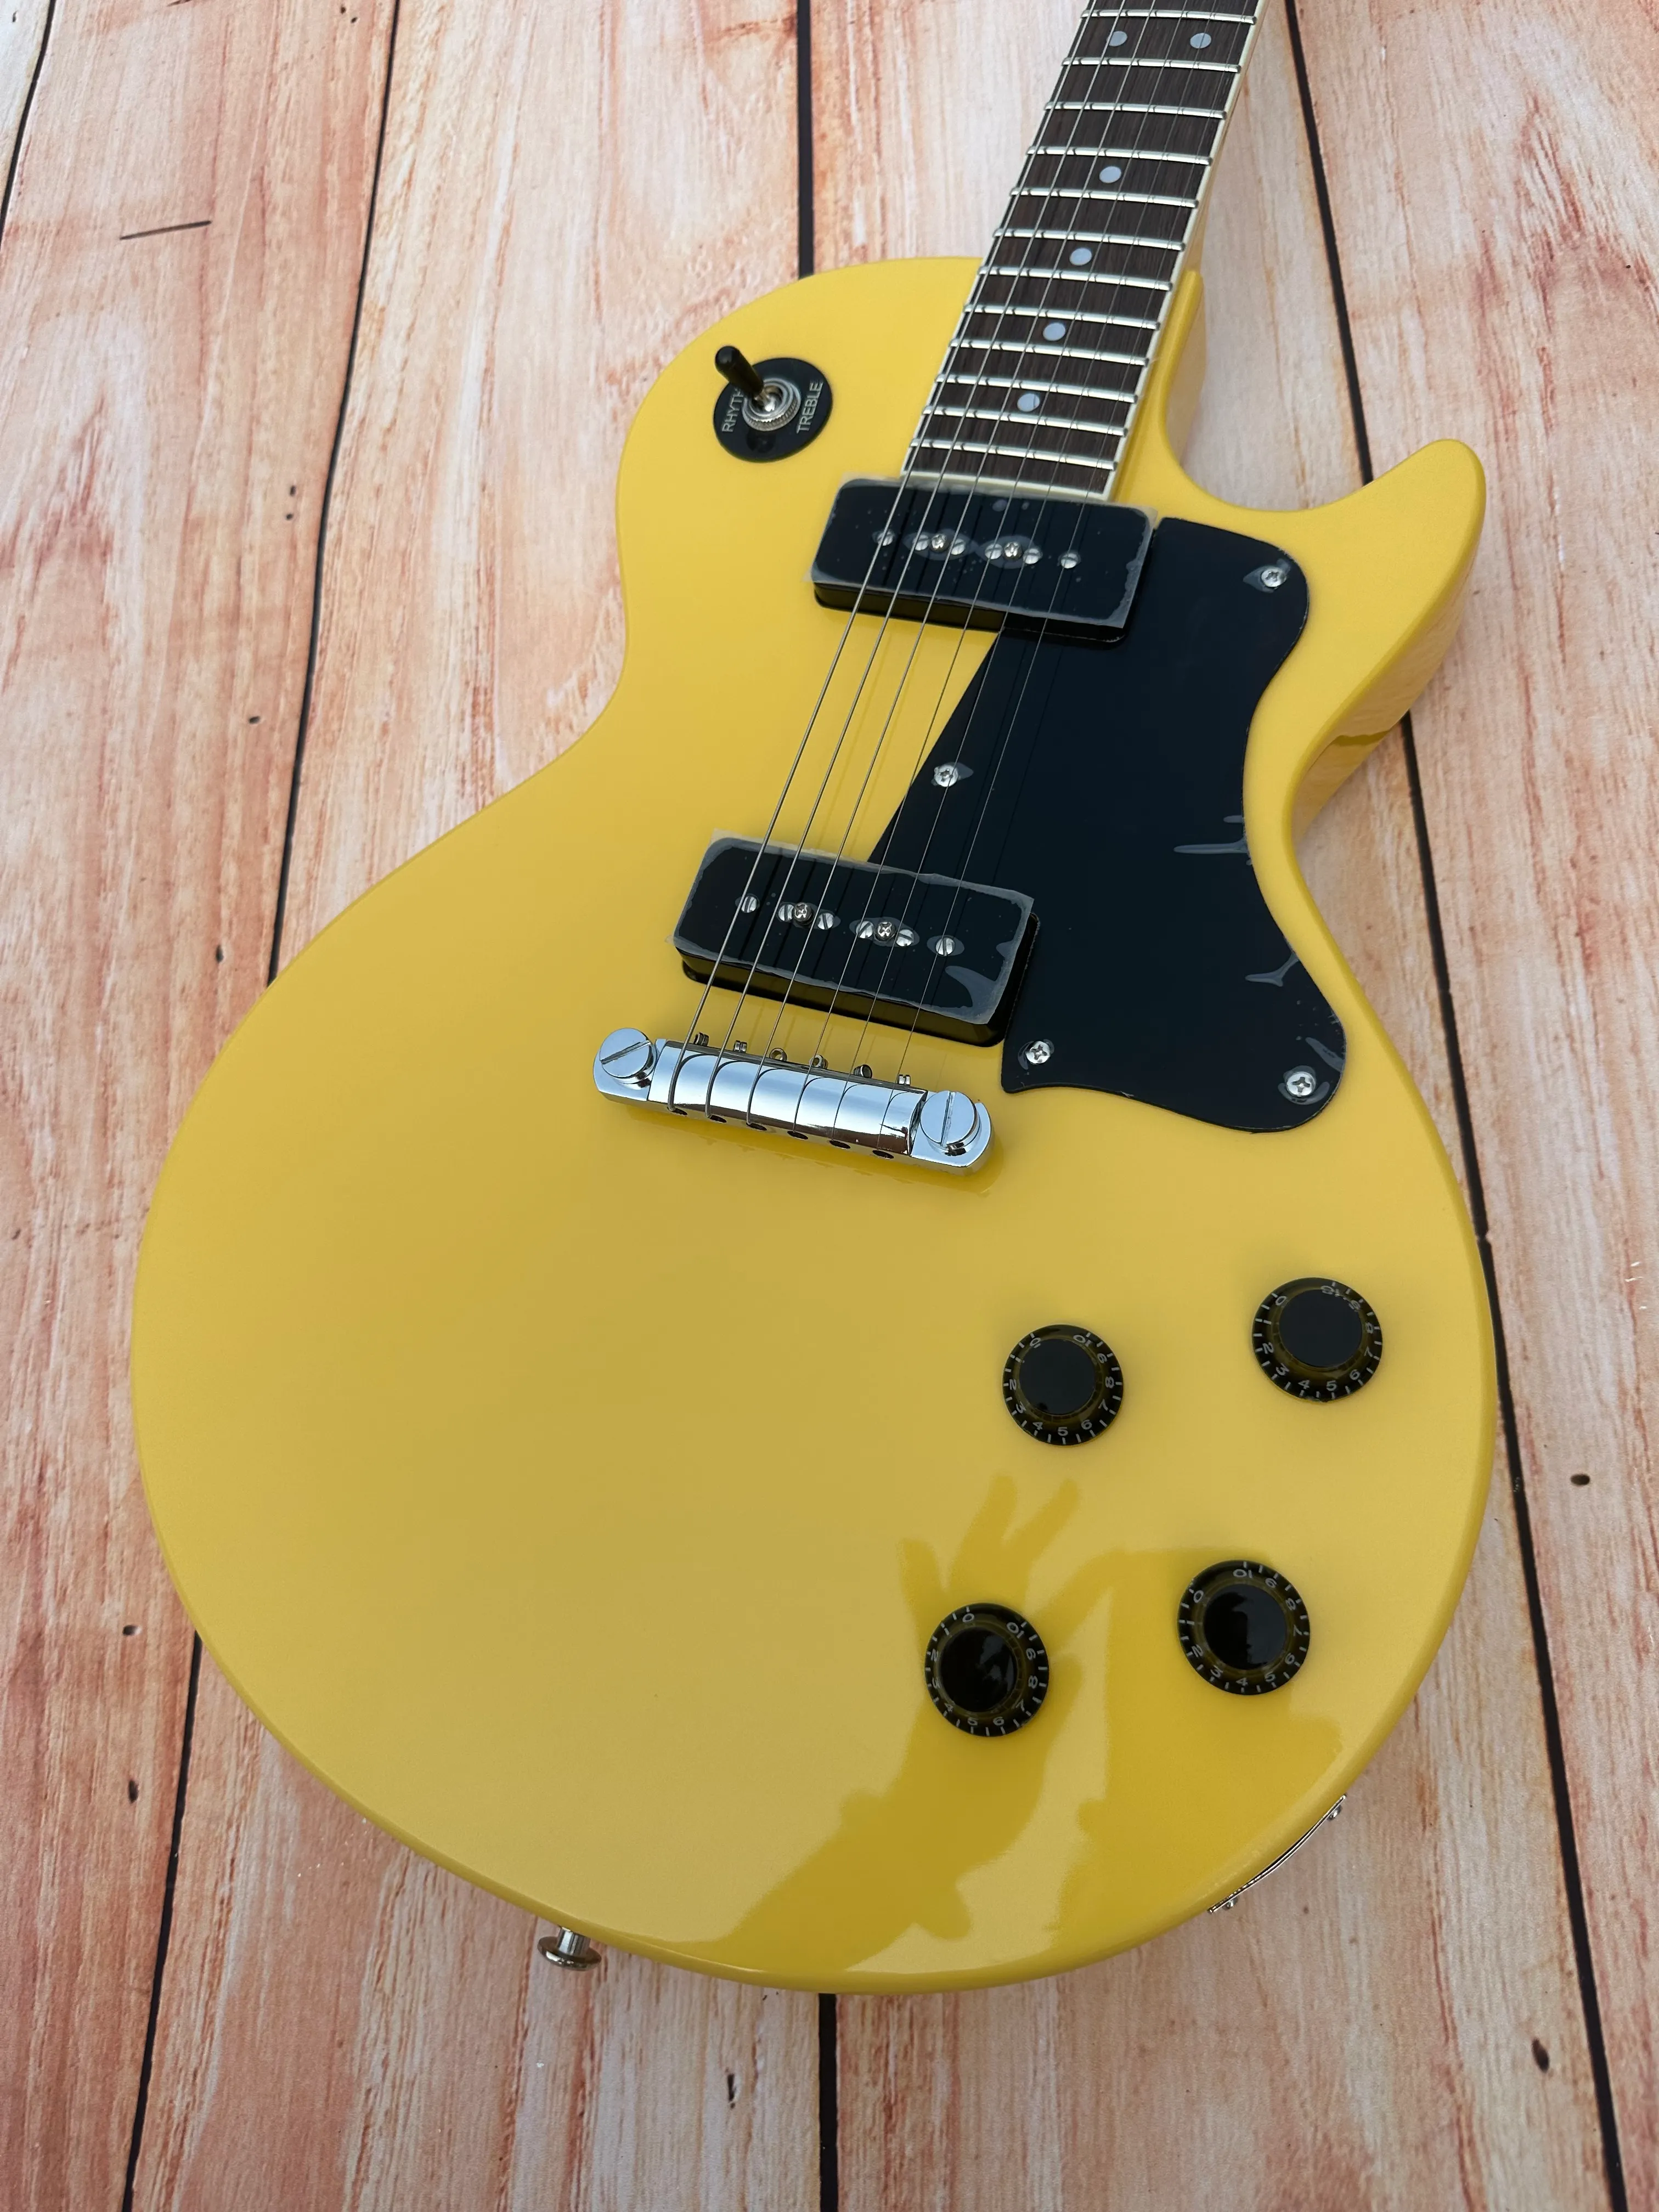 Standaard elektrische gitaar, TV geel, crème geel, helder, crème witte retro tuner, verkrijgbaar, bliksempakket